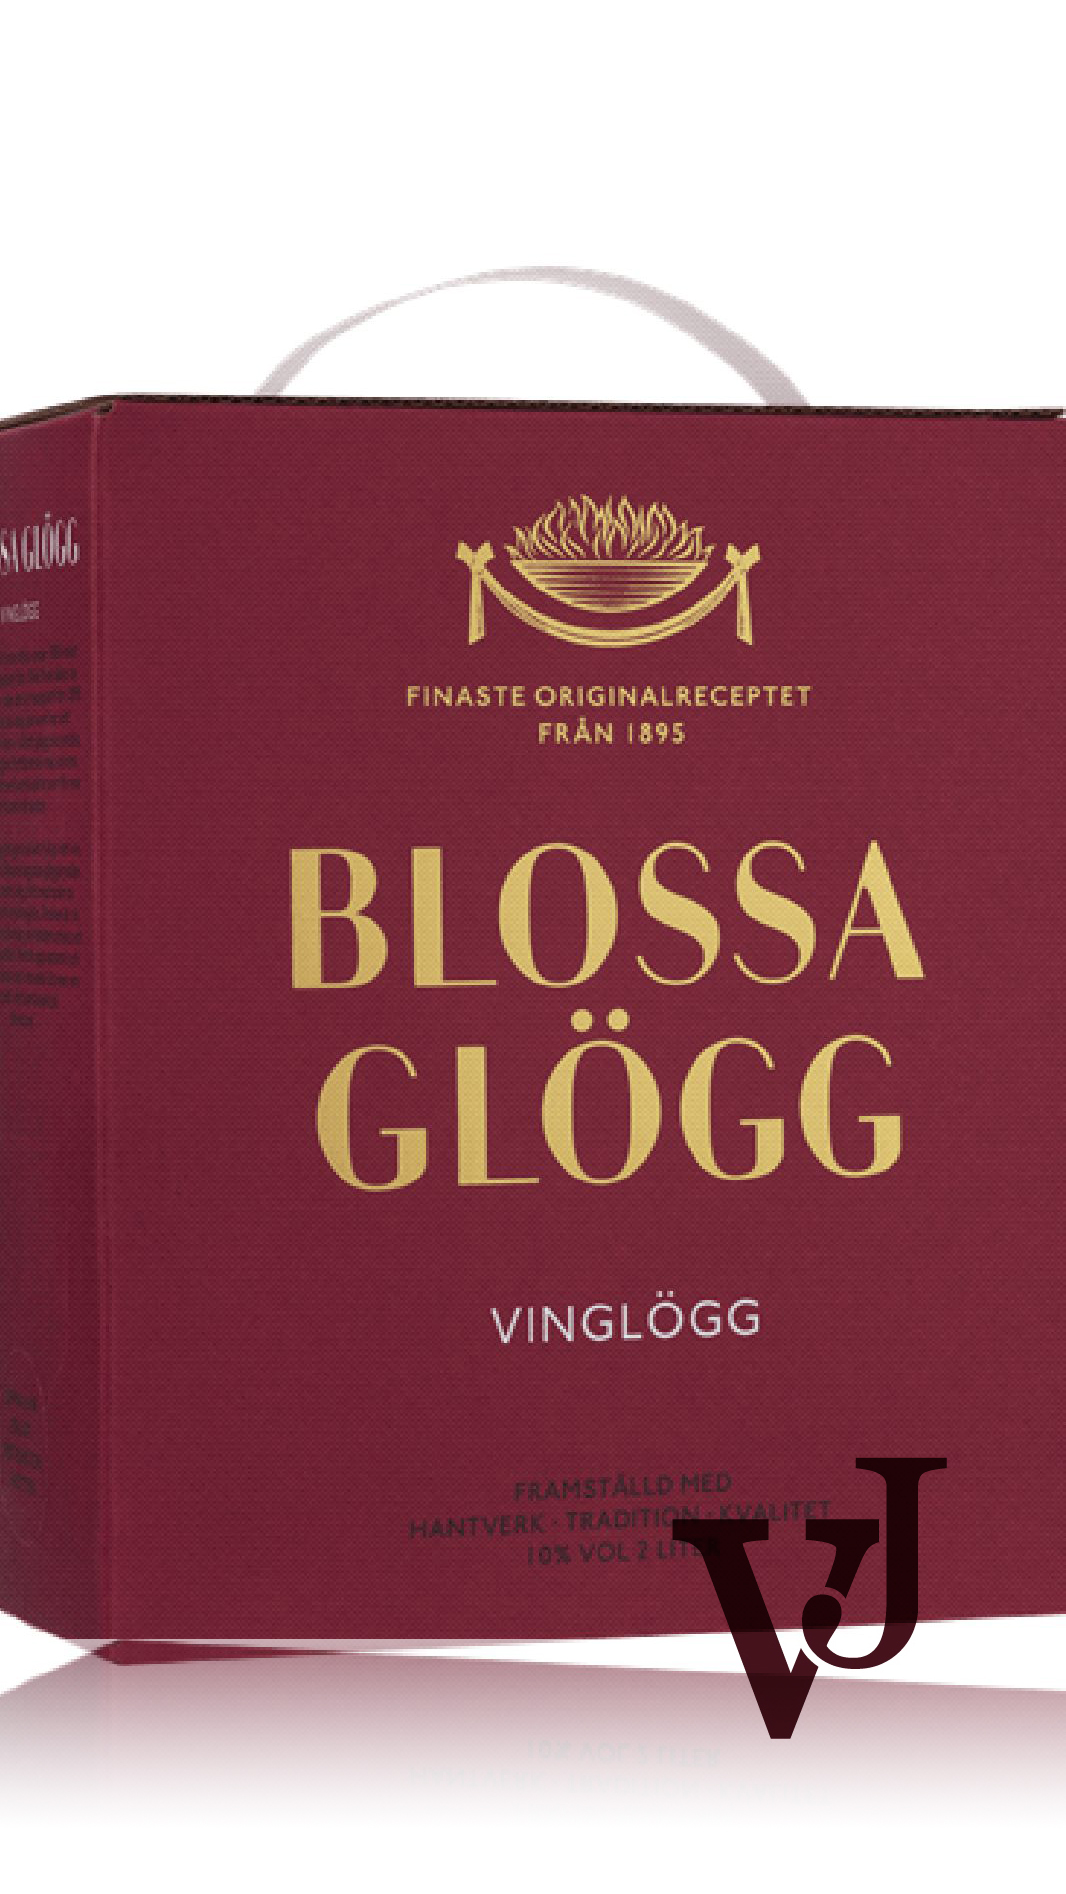 Övrigt vin - Blossa Vinglögg artikel nummer 9652008 från producenten Altia från området Varumärketärinternationellt